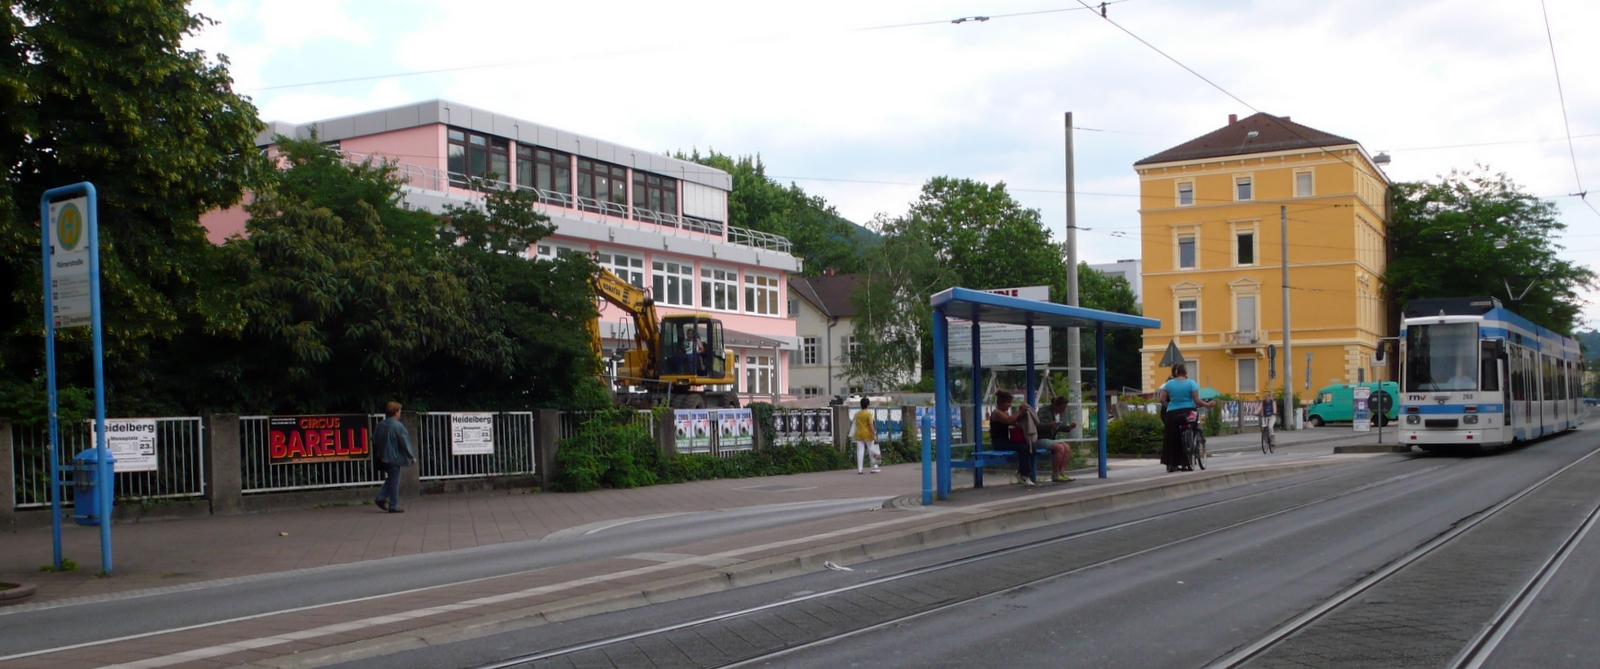 Datei:Römerstrasse.jpg